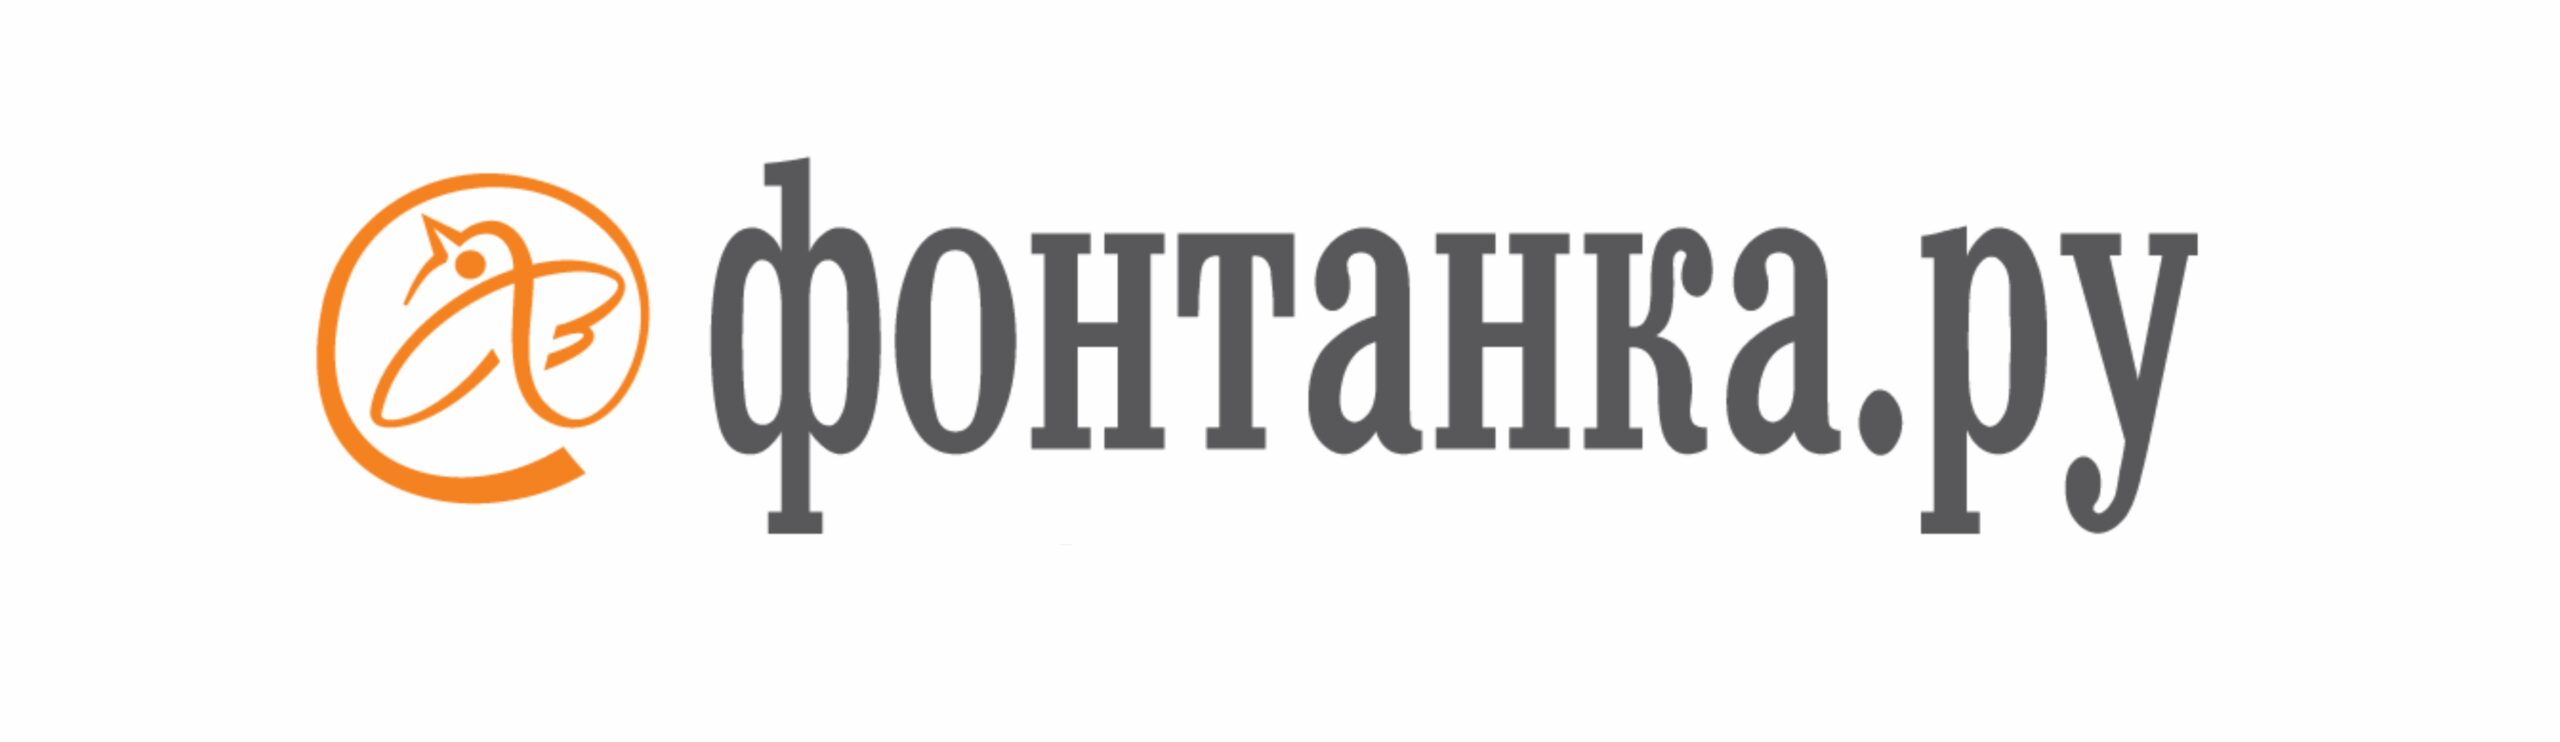 6 фонтанка ру. Фонтанка ру. Фонтанка логотип. Фонтанка СМИ. Фонтанка ру логотип на прозрачном фоне.